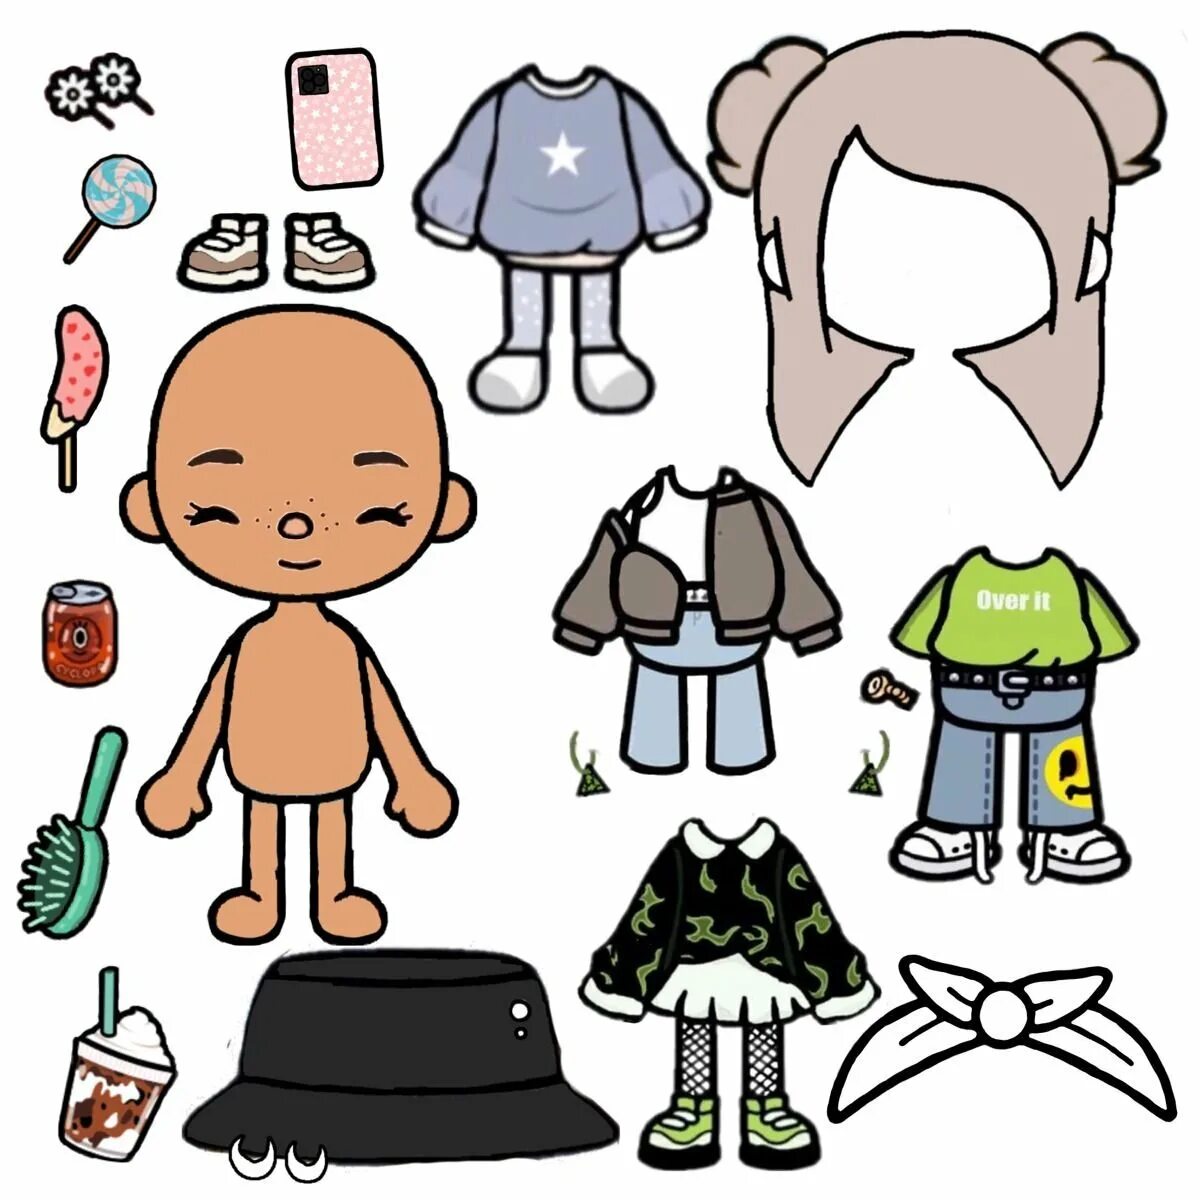 Toca boca из бумаги. Кукла toca boca. Бумажные человечки с одеждой. Персонаж для распечатки с одеждой. Человечки из бумаги с одеждой.